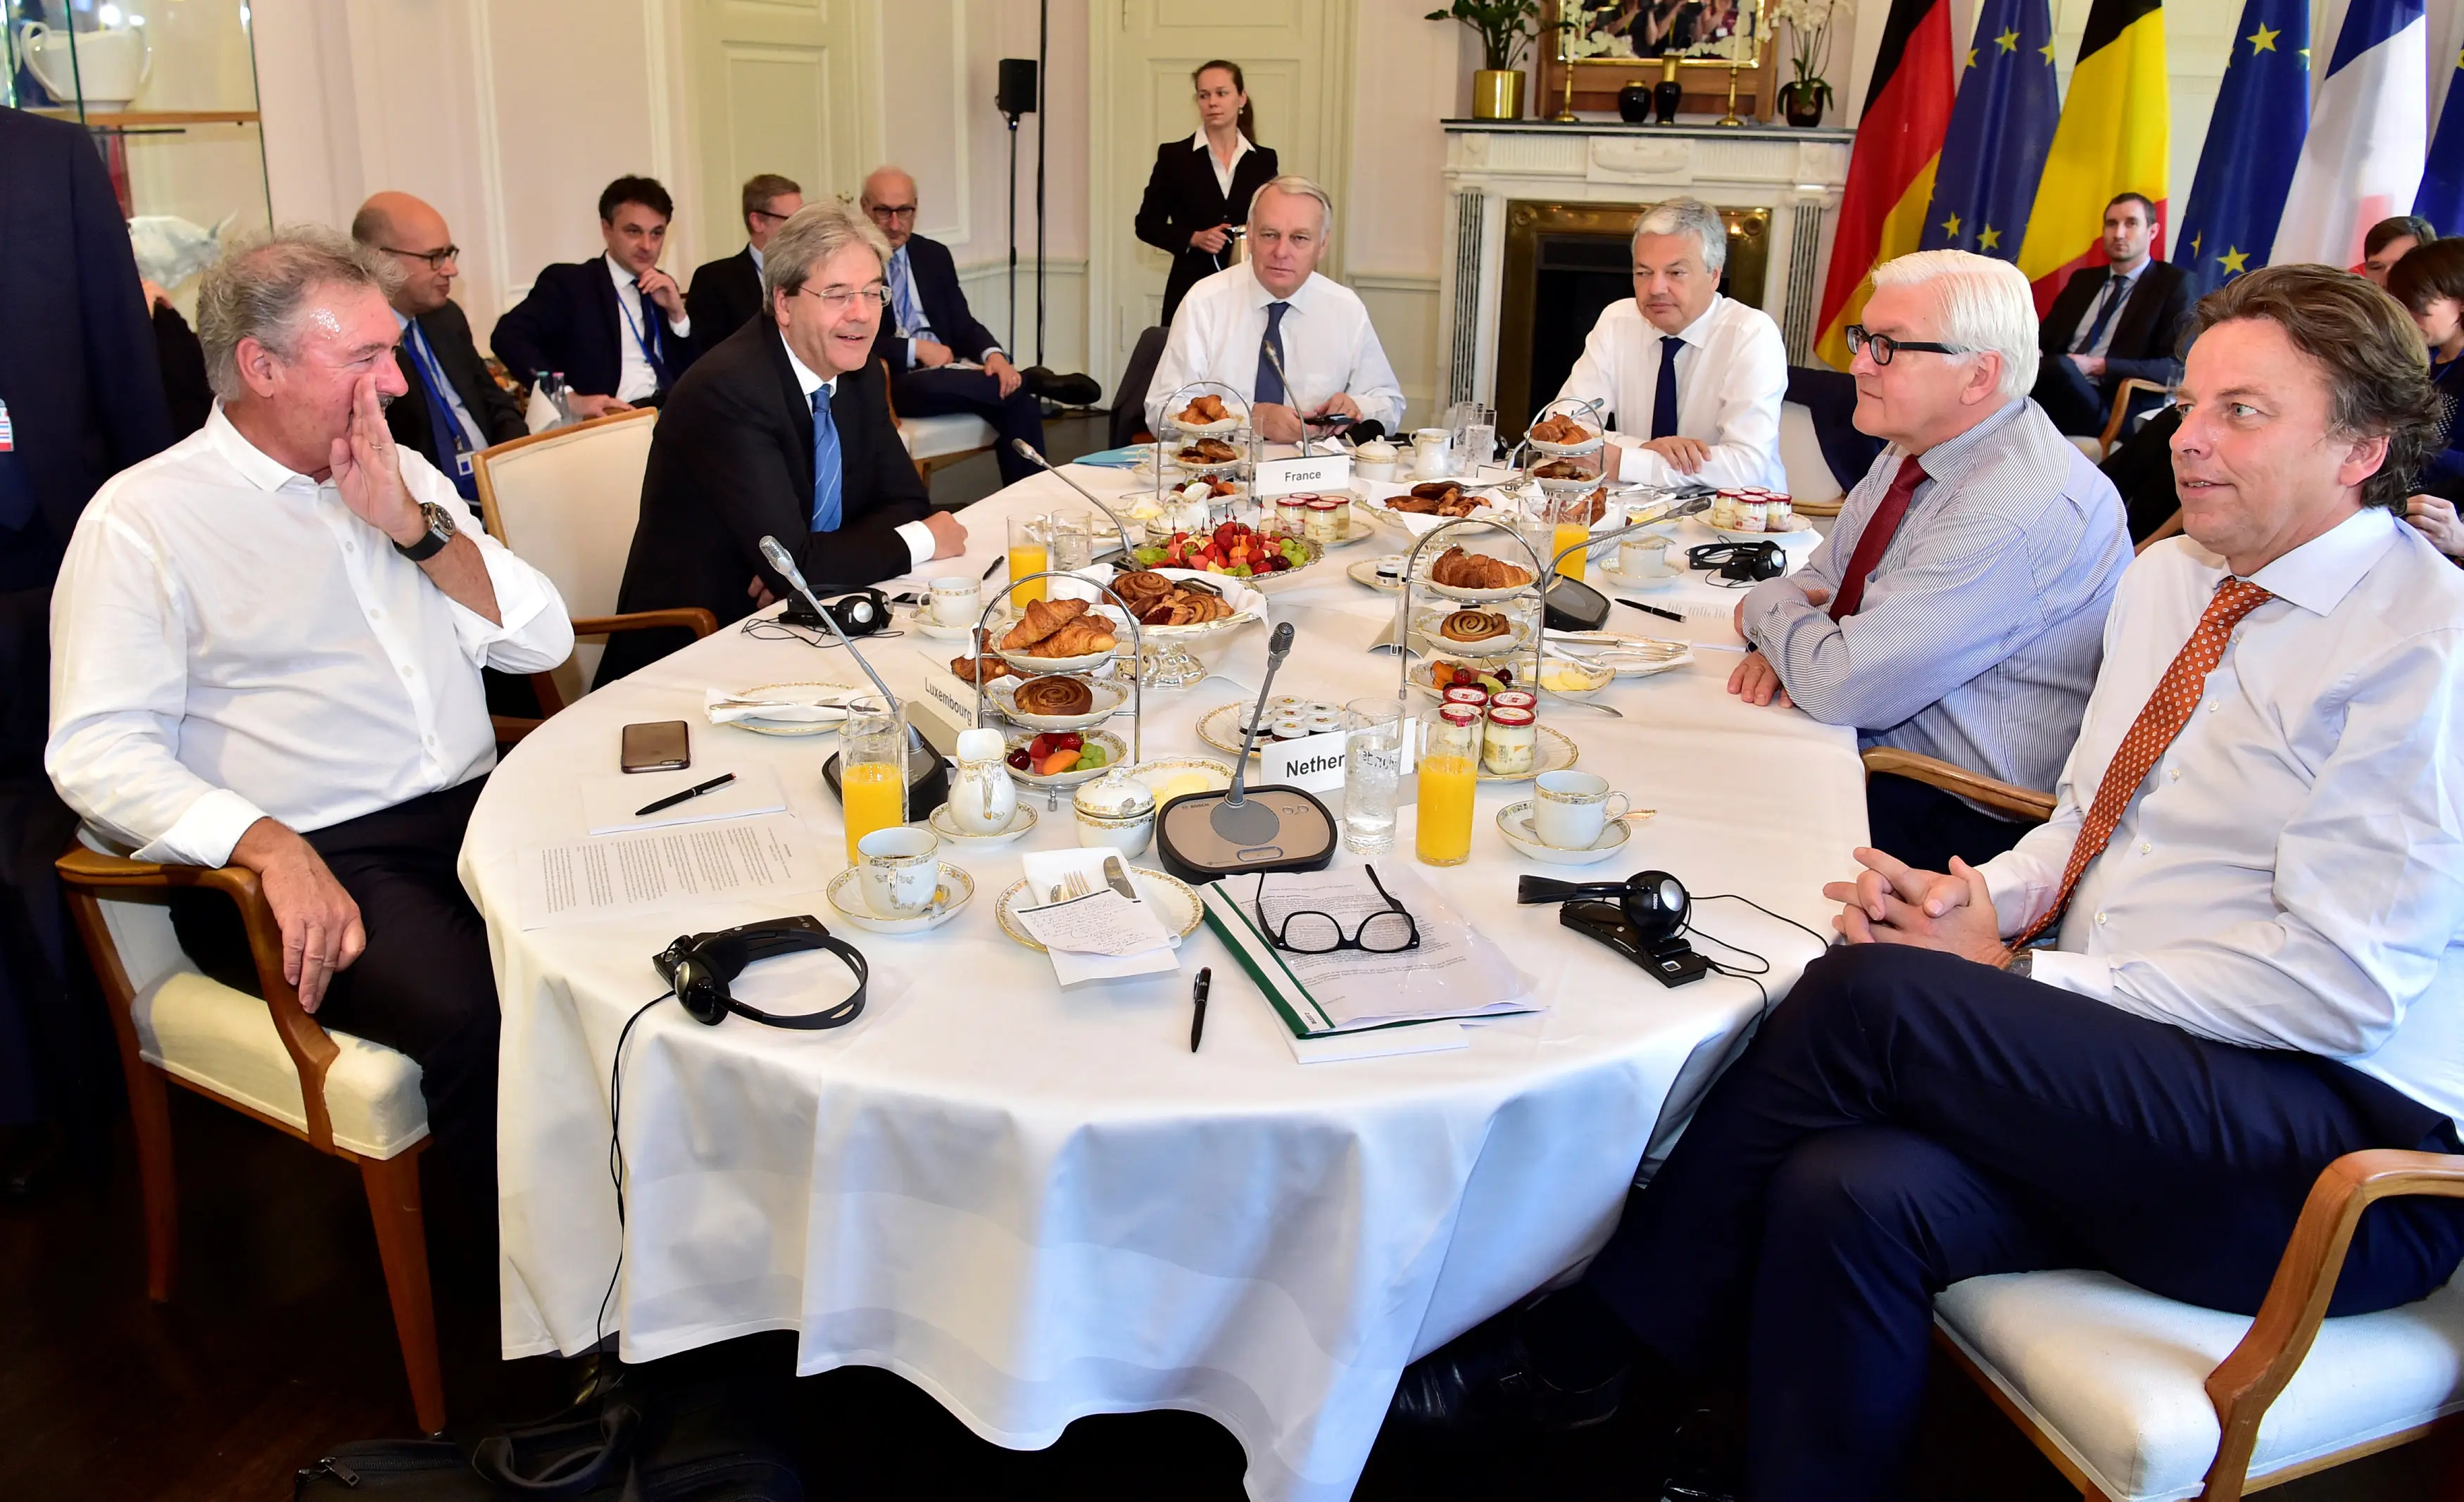 שרי החוץ נפגשים בפגישתם בבית הארחה של שר החוץ הגרמני, הבוקר